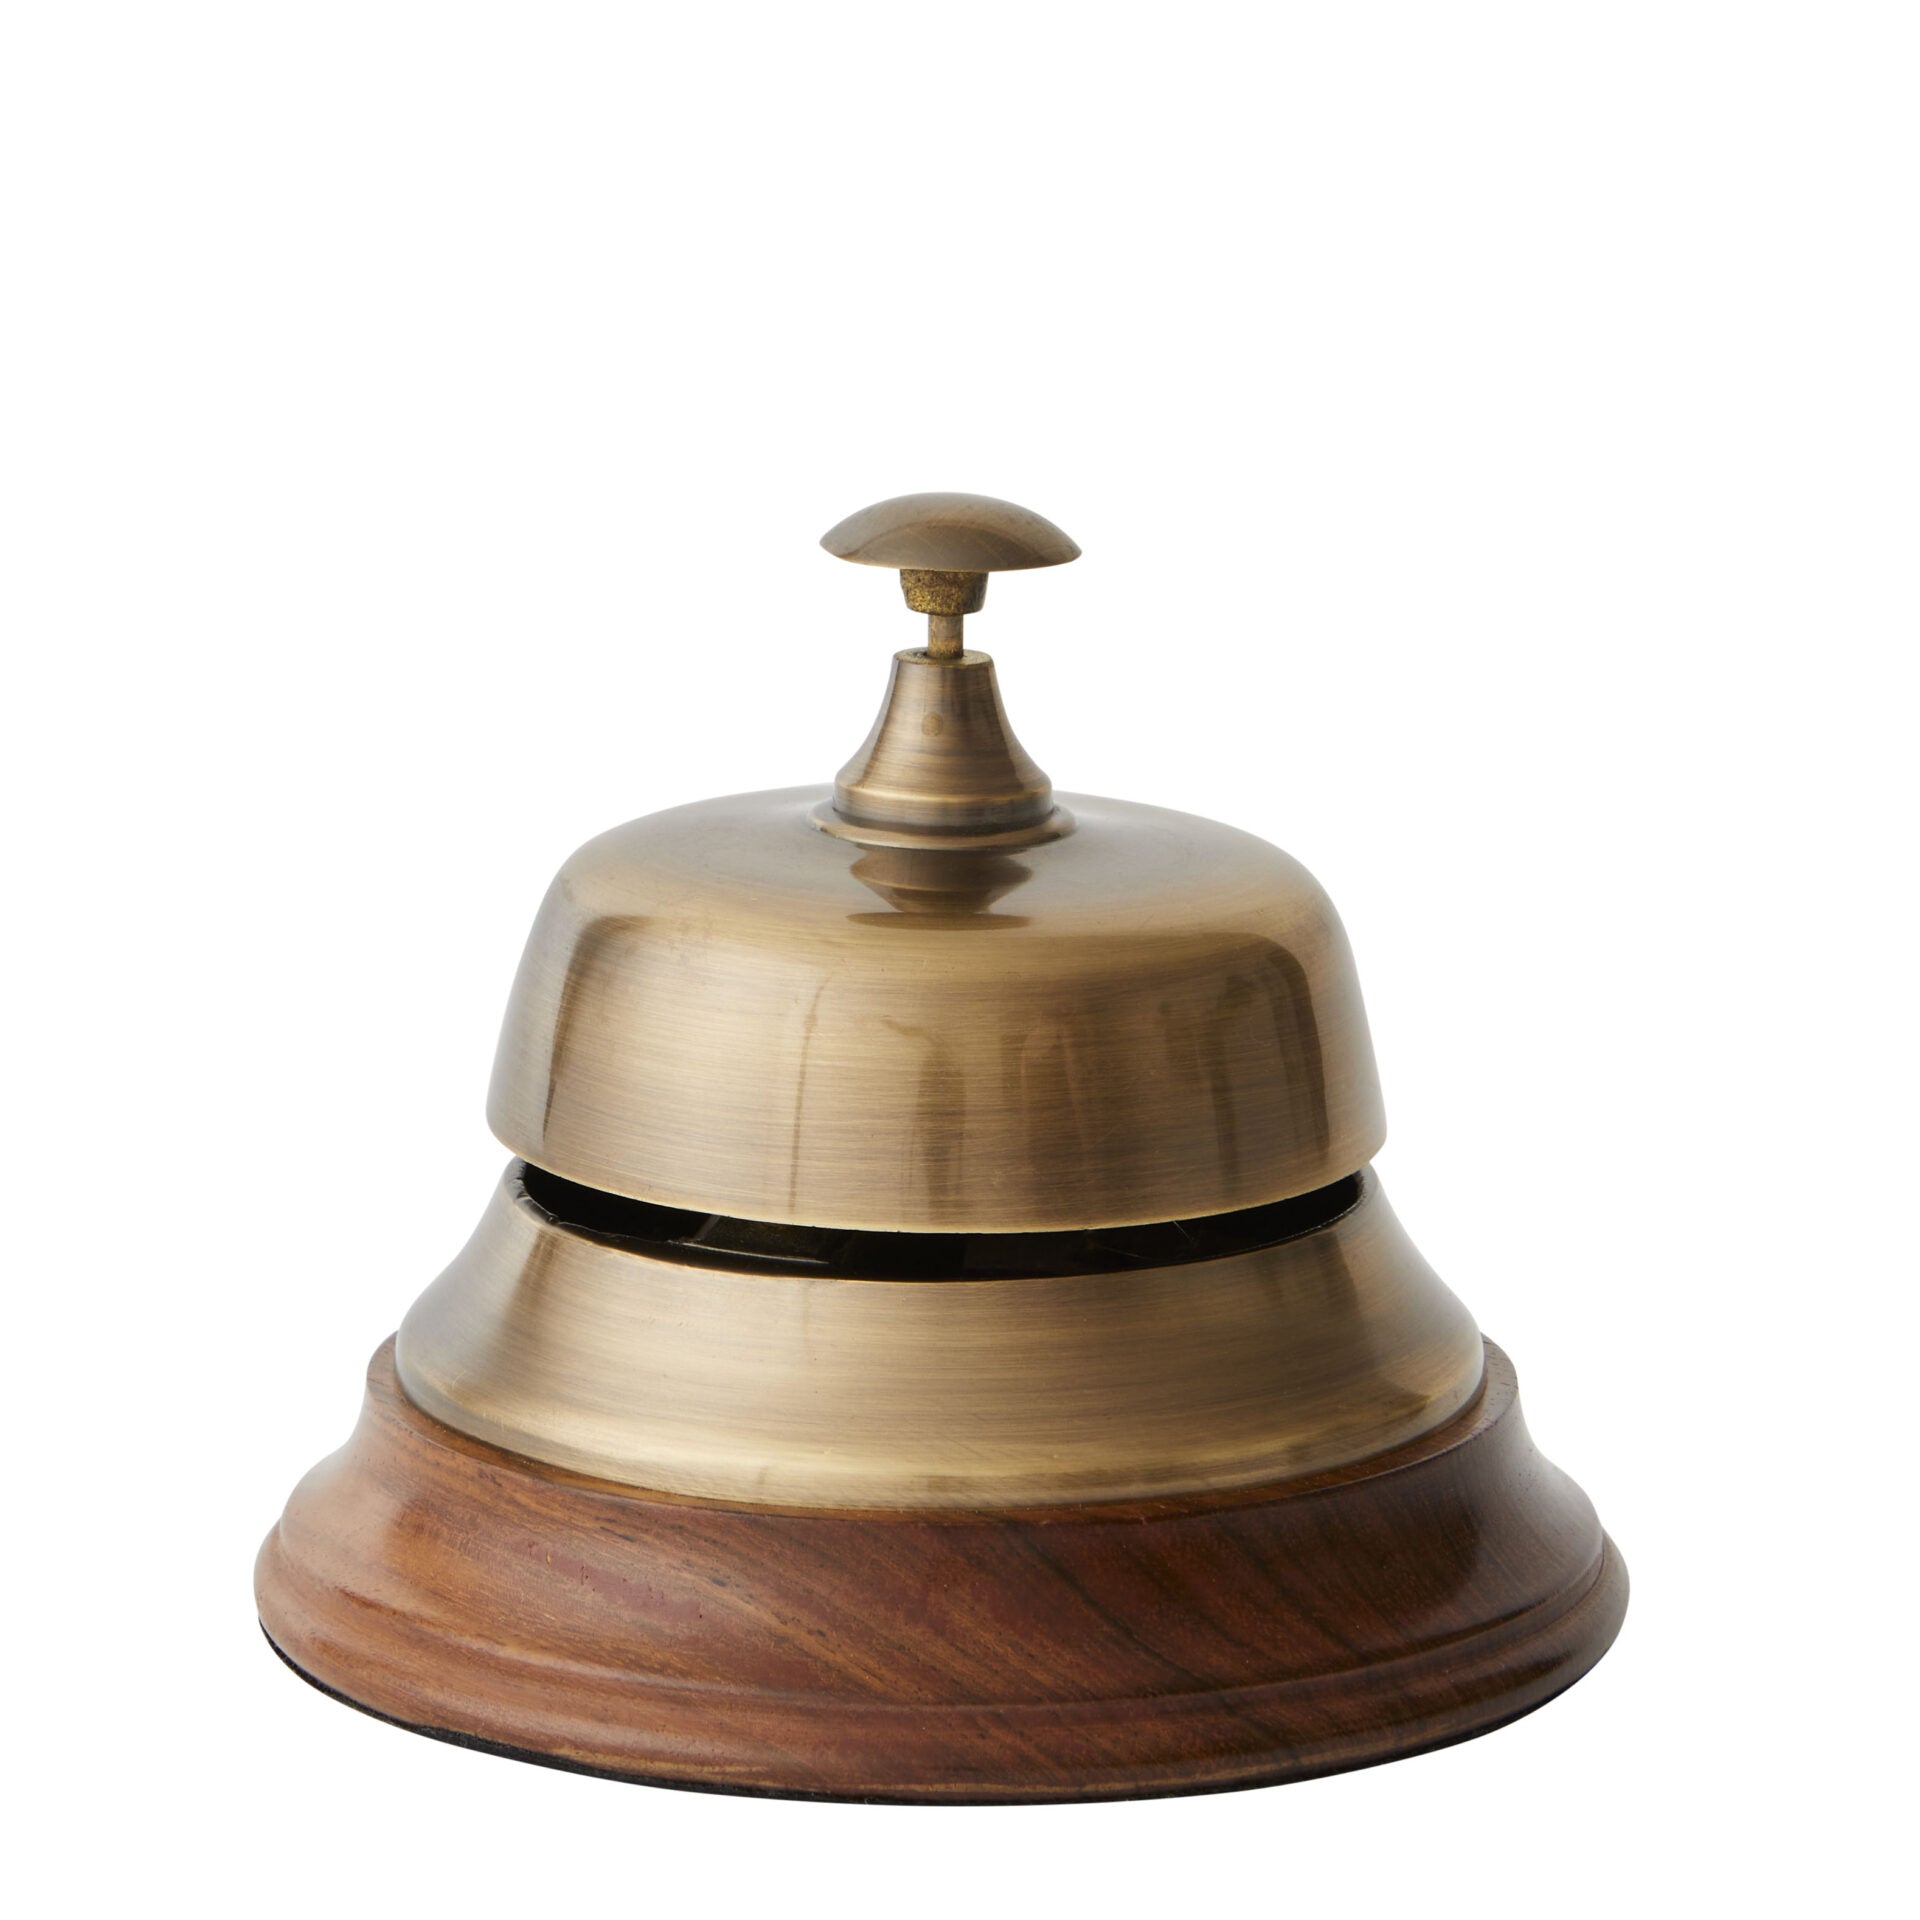 Desk Call Bell in Bronze & Wood - 12cm - Notbrand